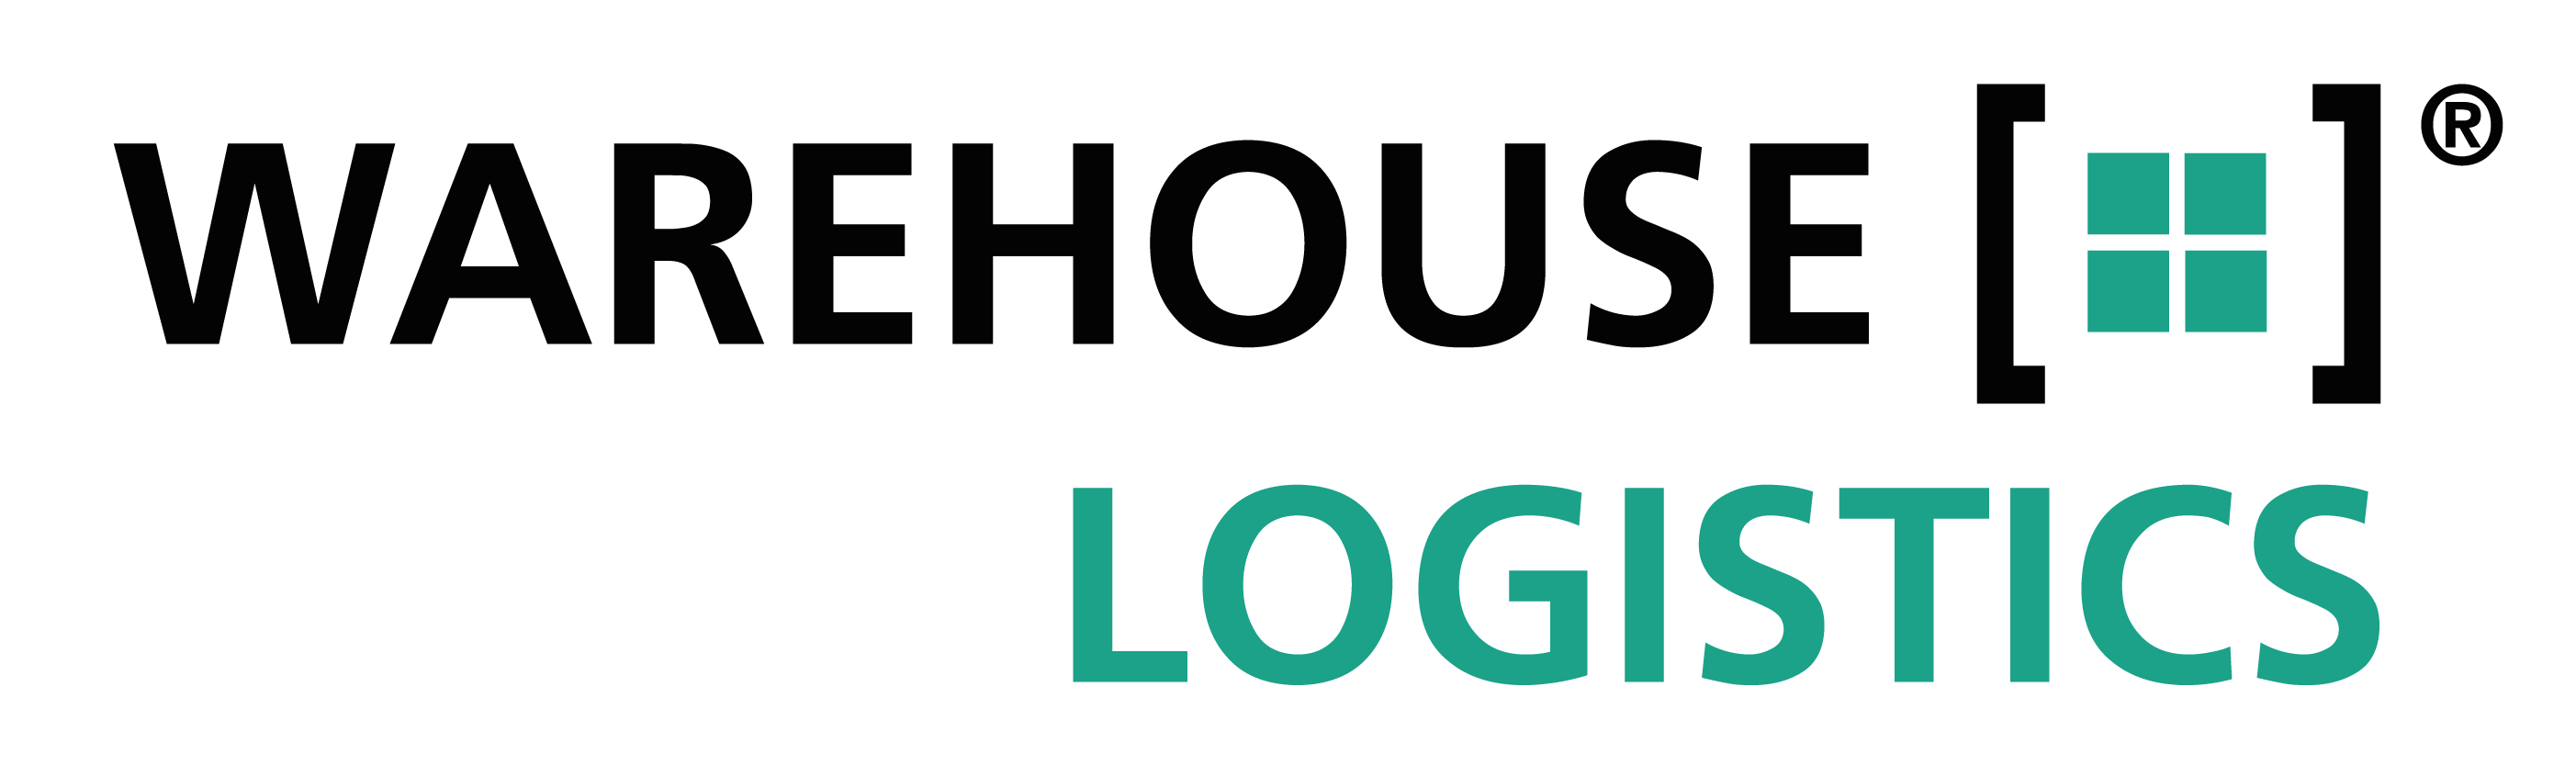 warehouse-logistics: Datenschutzerklärung